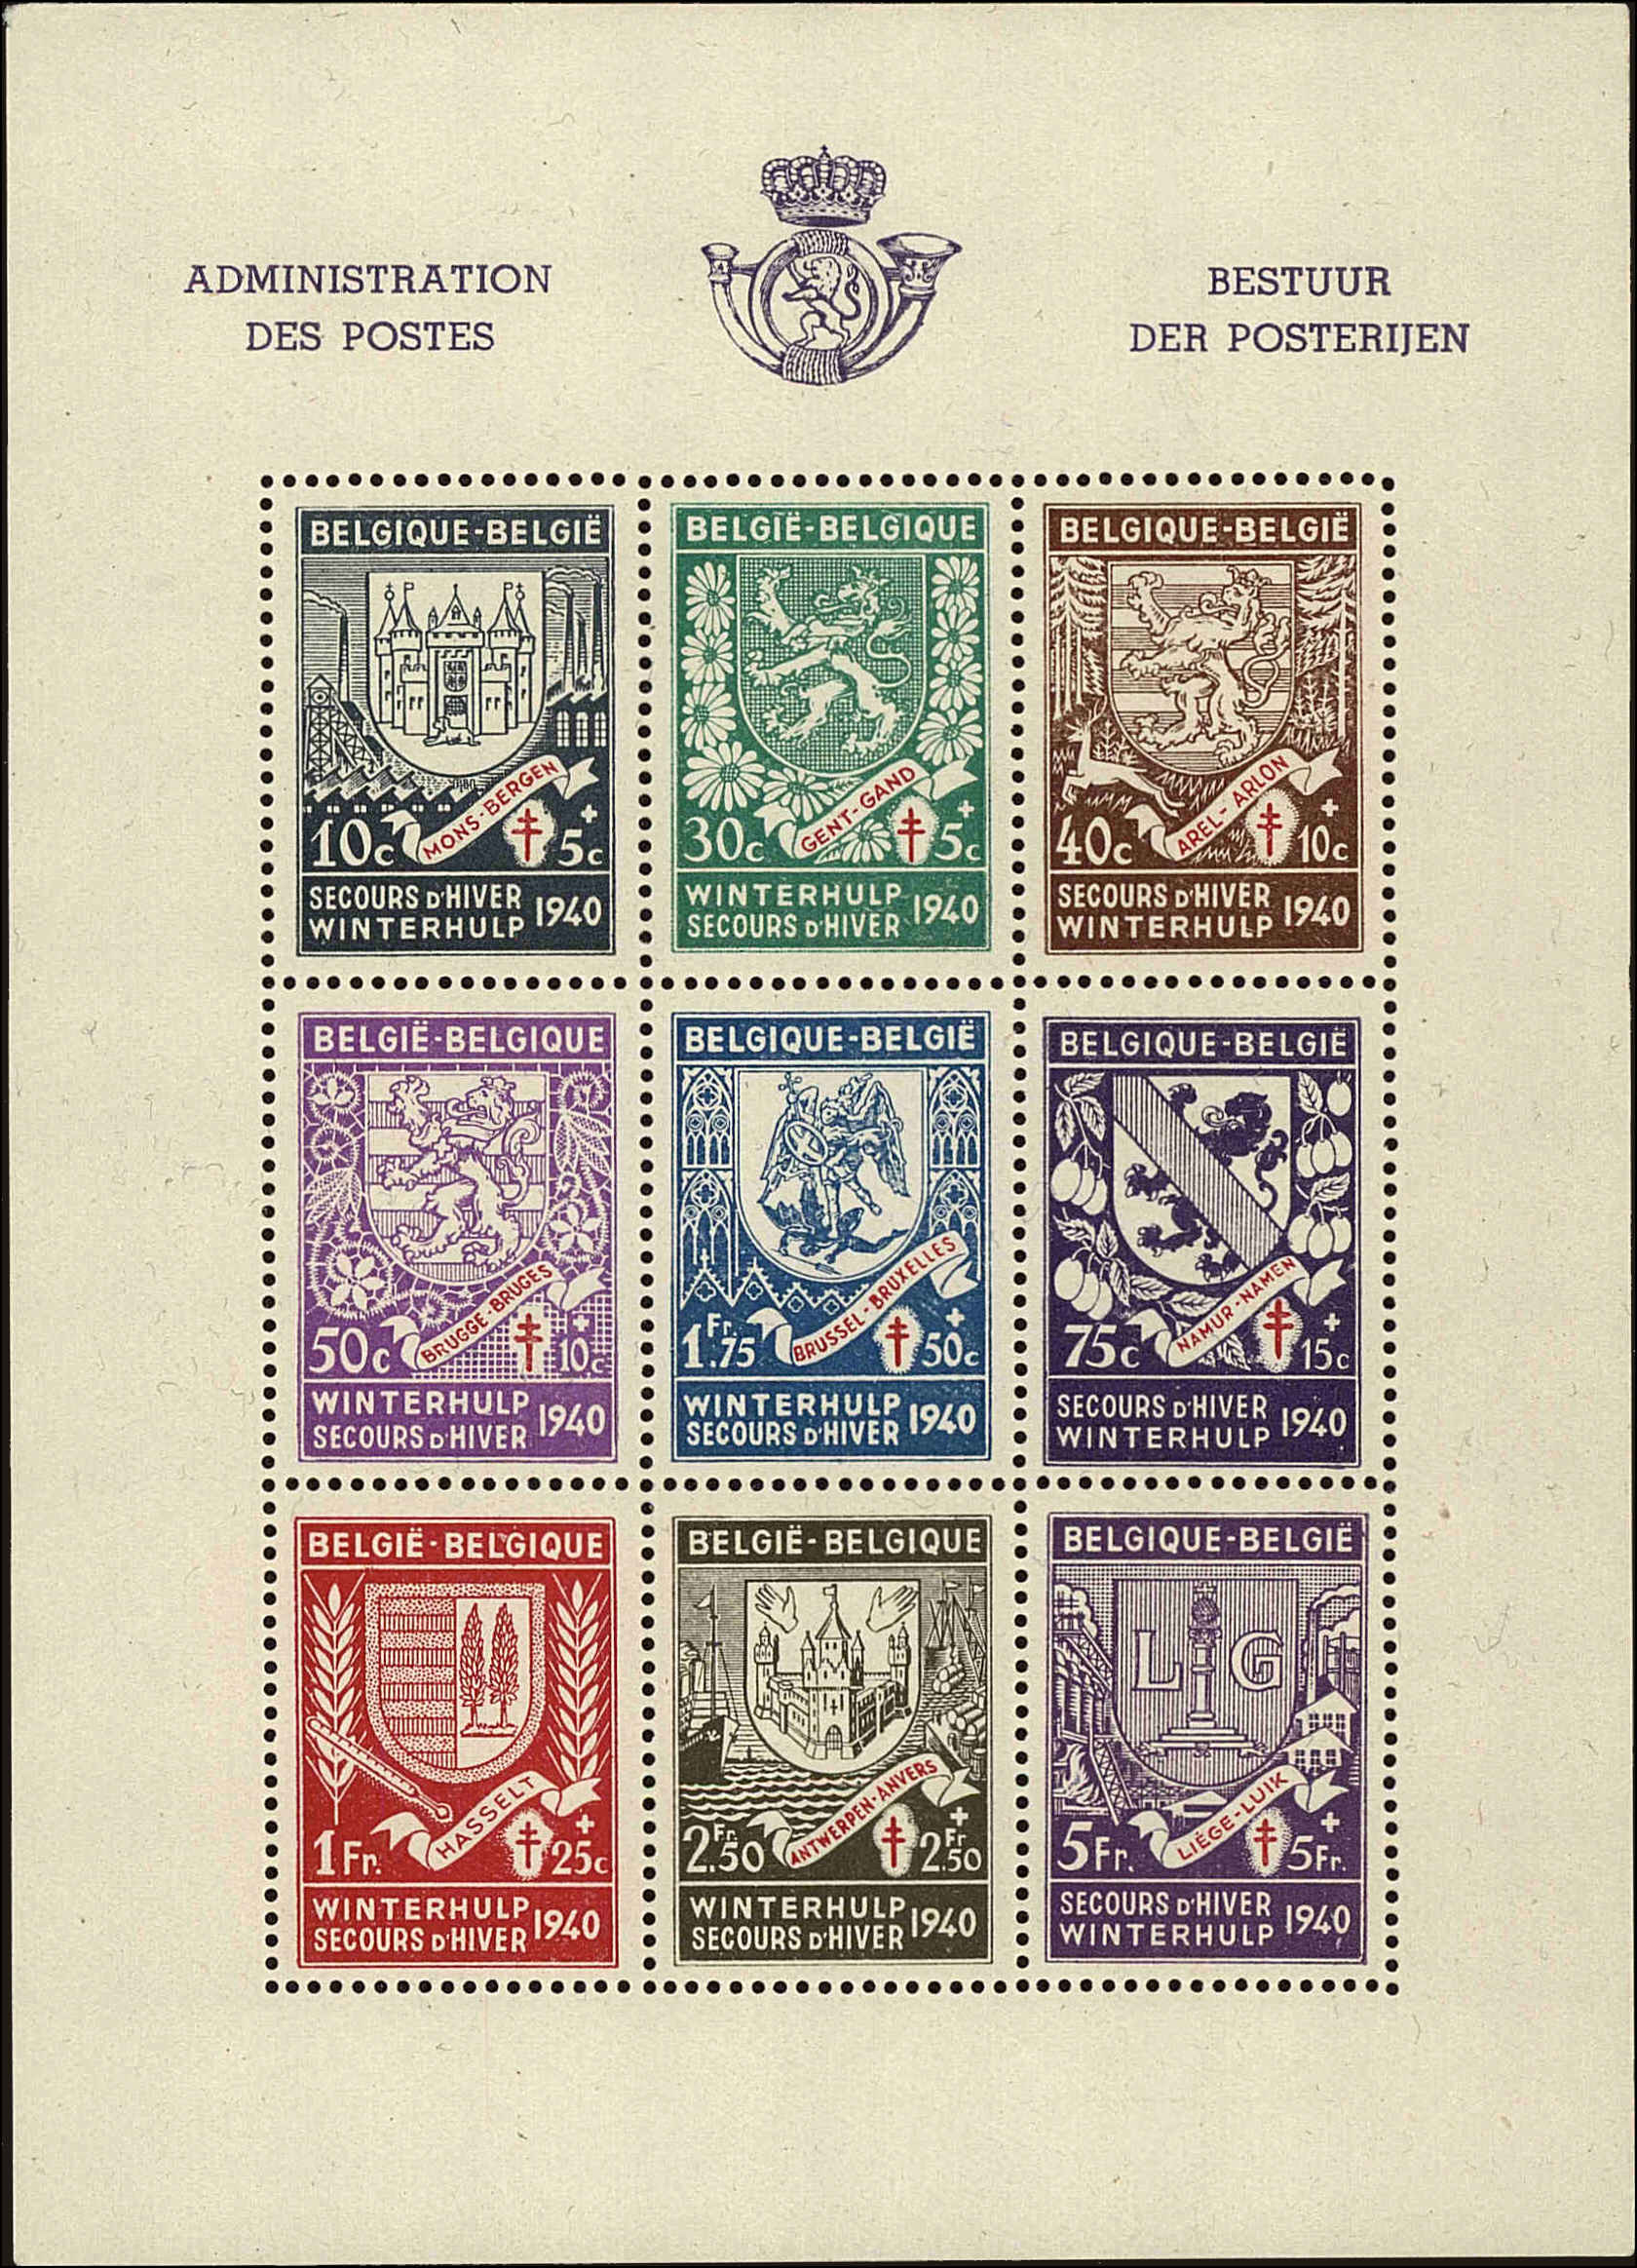 Front view of Belgium B279 collectors stamp